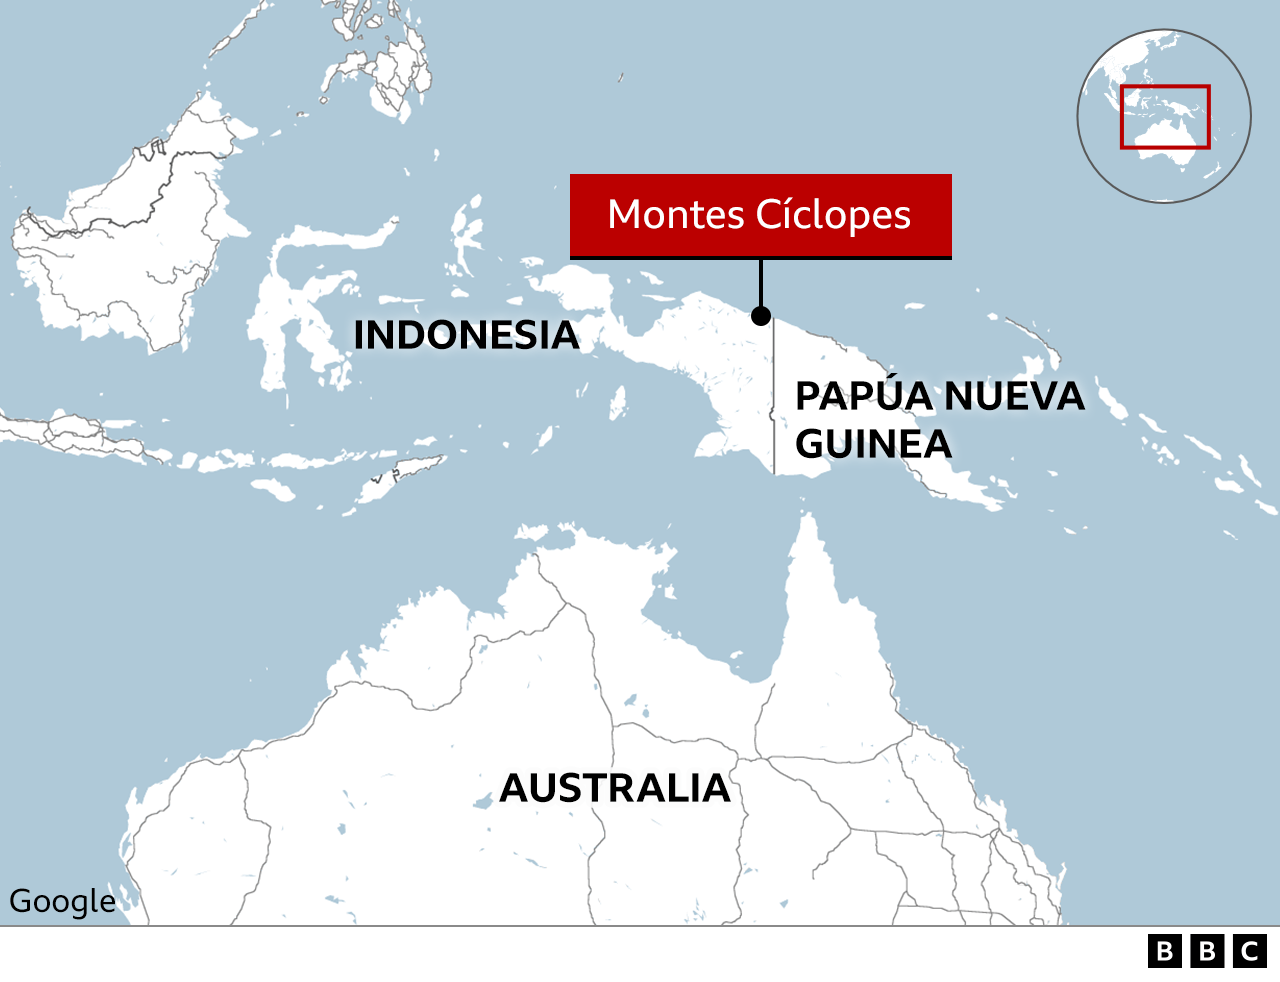 Mapa sobre la ubicación de los montes Cíclopes.